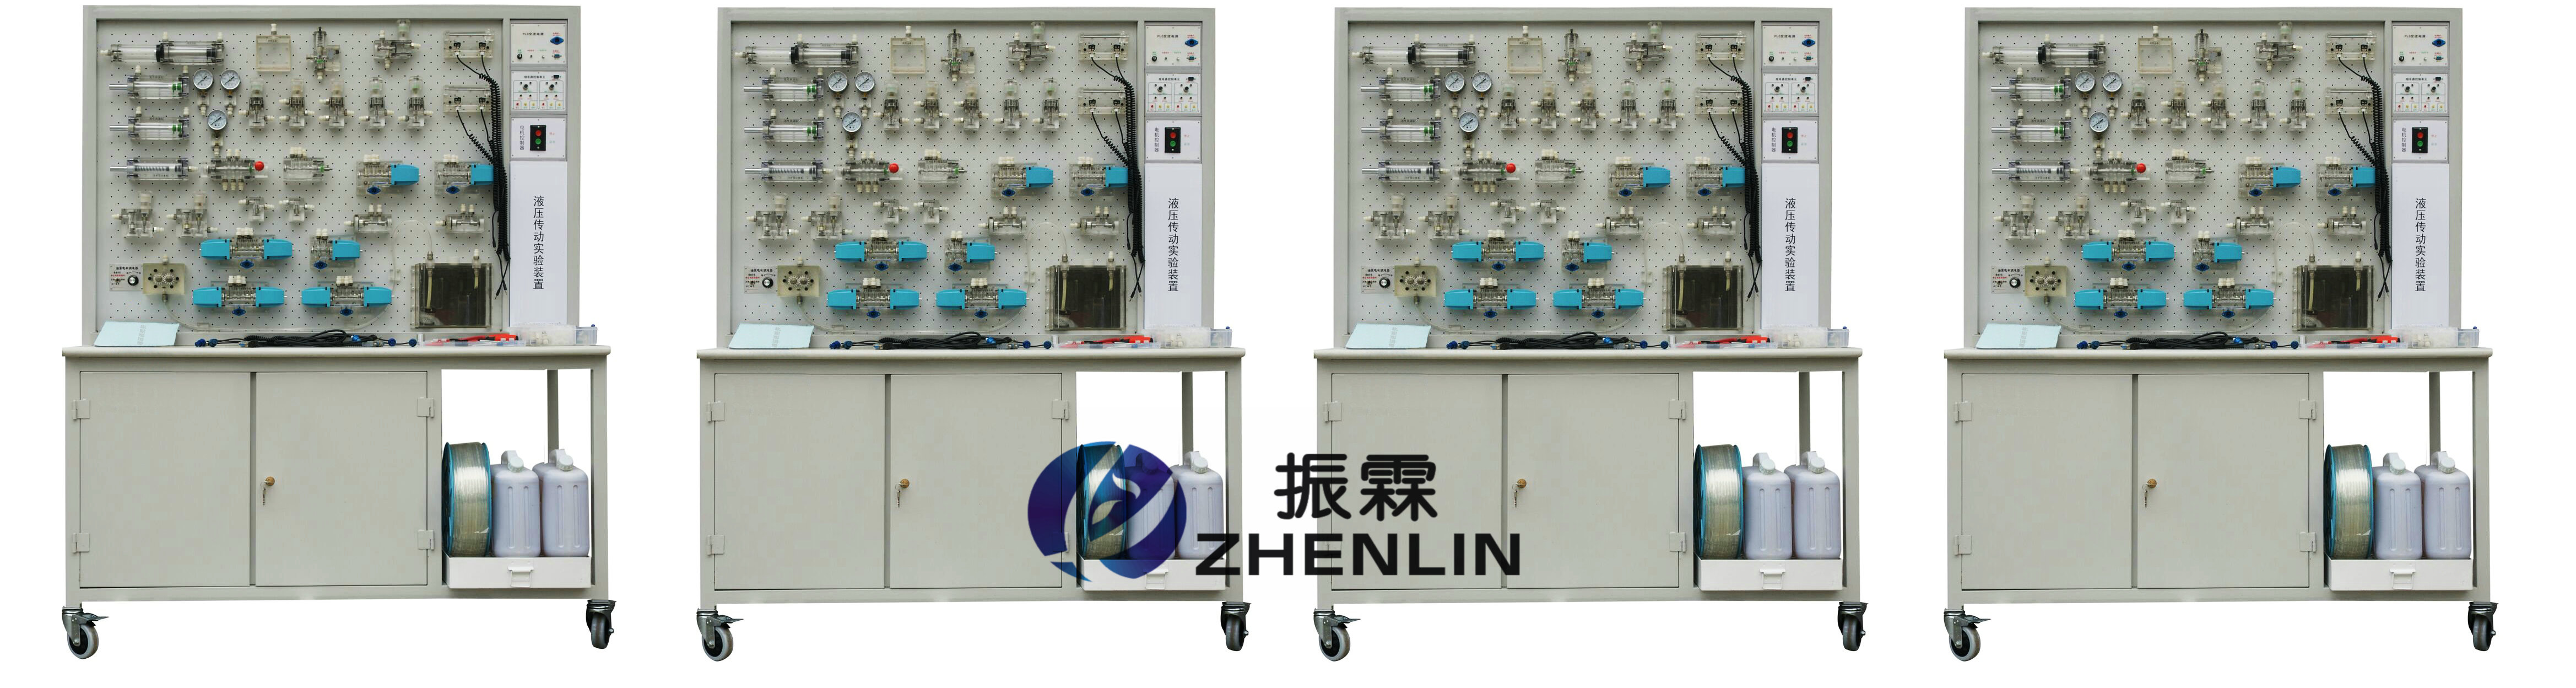 液压气动实验装置,四合一液压传动演示系统,气动液压实训设备--上海振霖教学设备有限公司